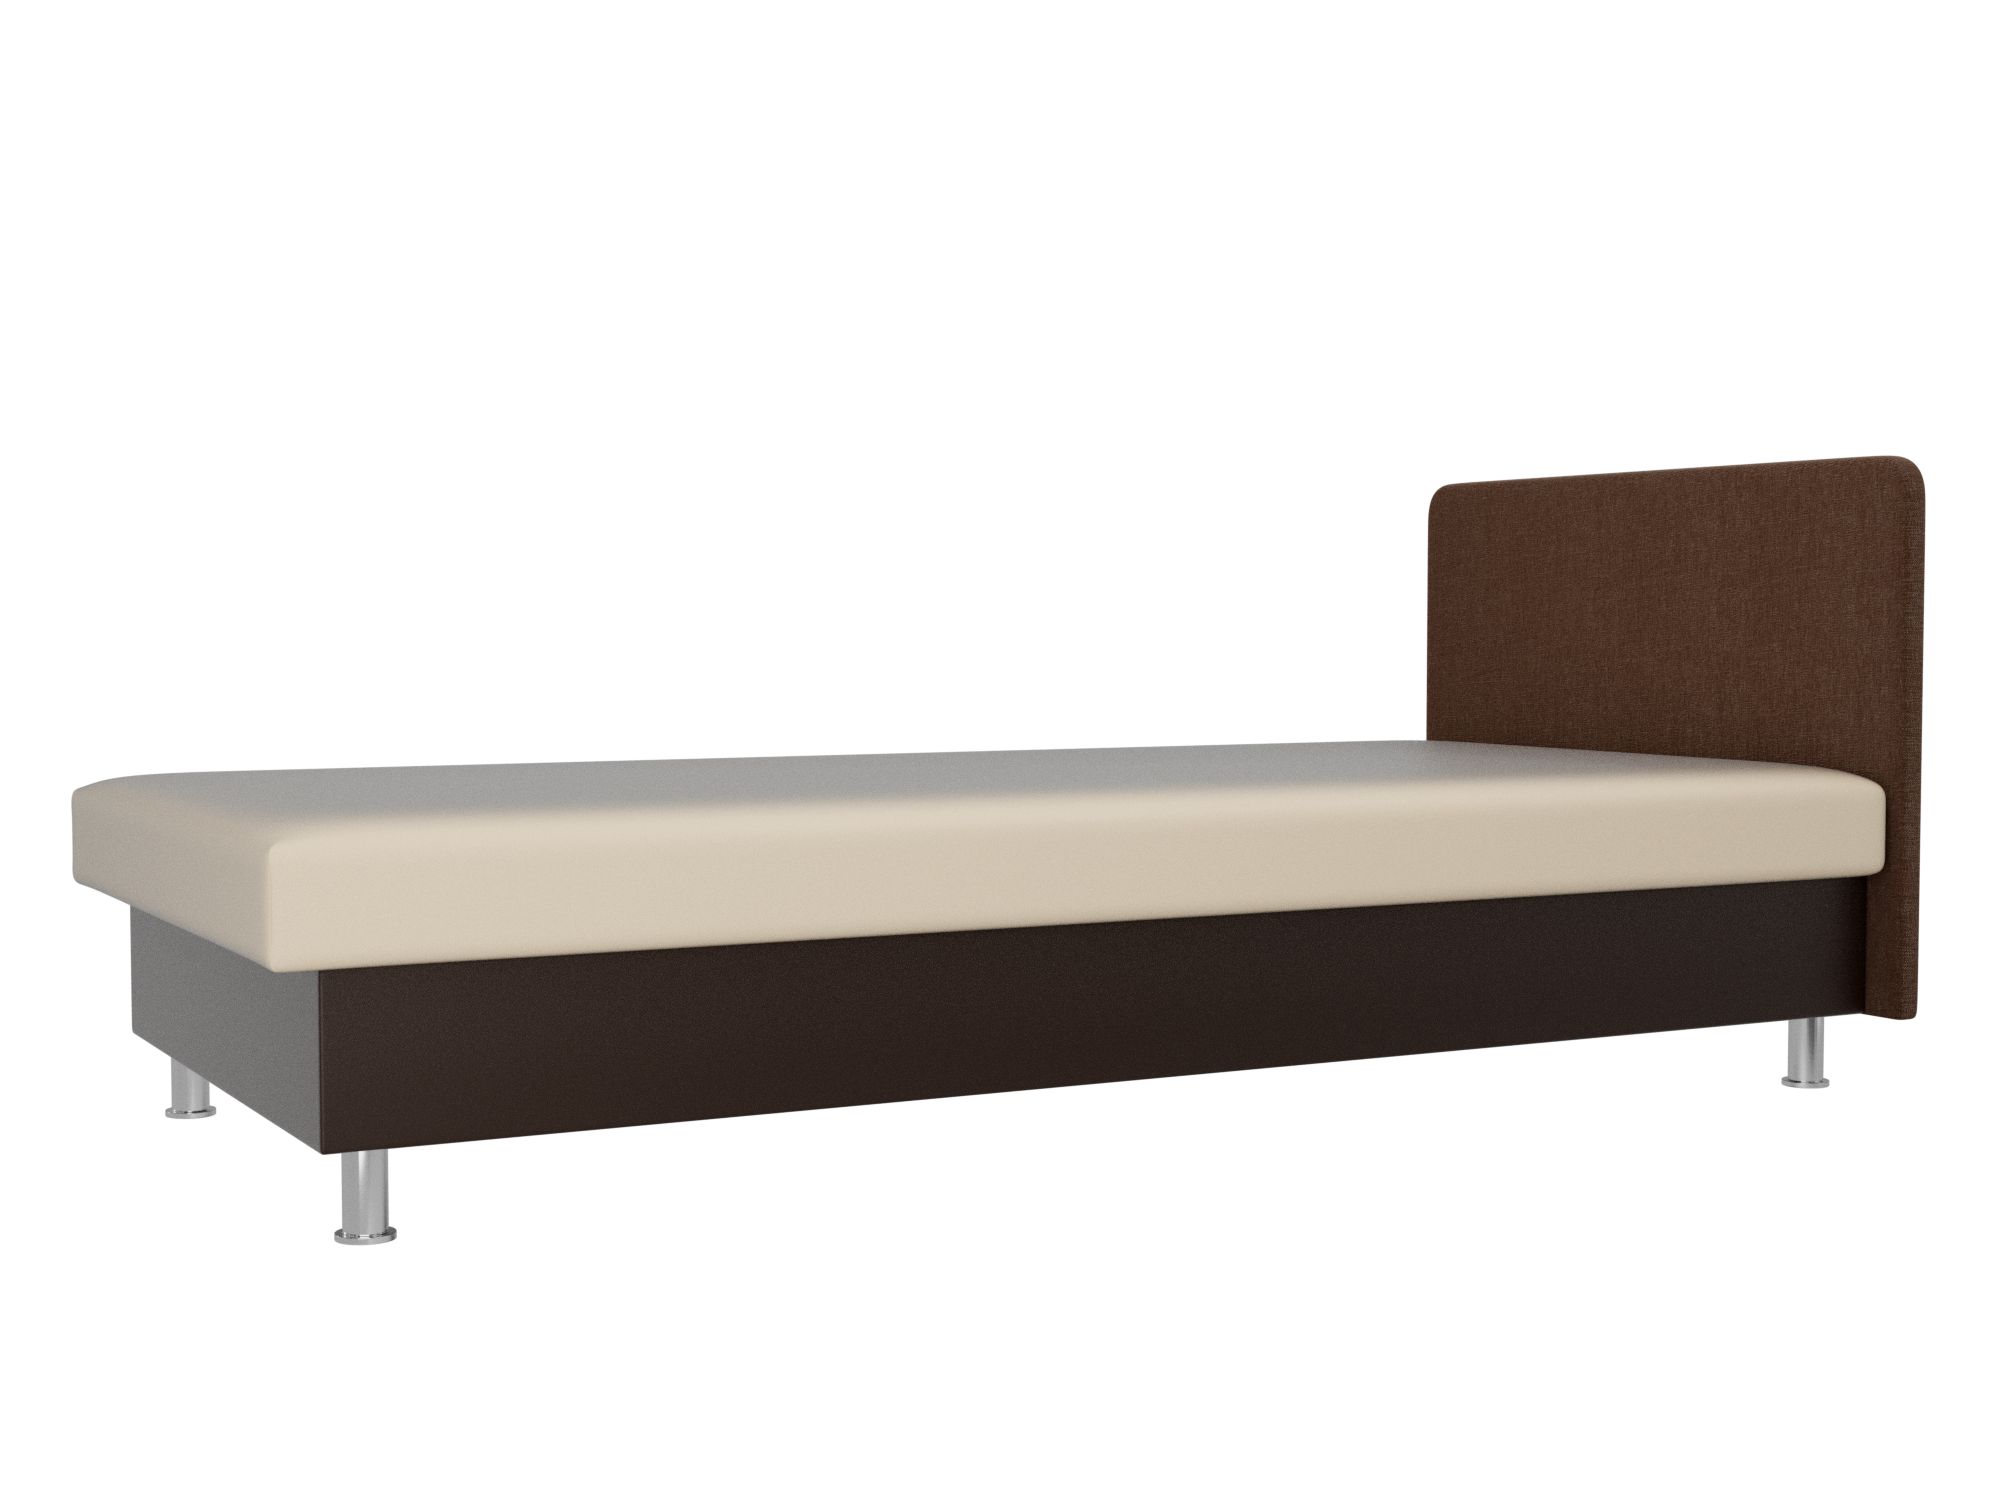 Кровать Мальта (80х200) Бежевый, Коричневый, ЛДСП кровать с ящиками волкер 80х200 белый коричневый бежевый лдсп мдф